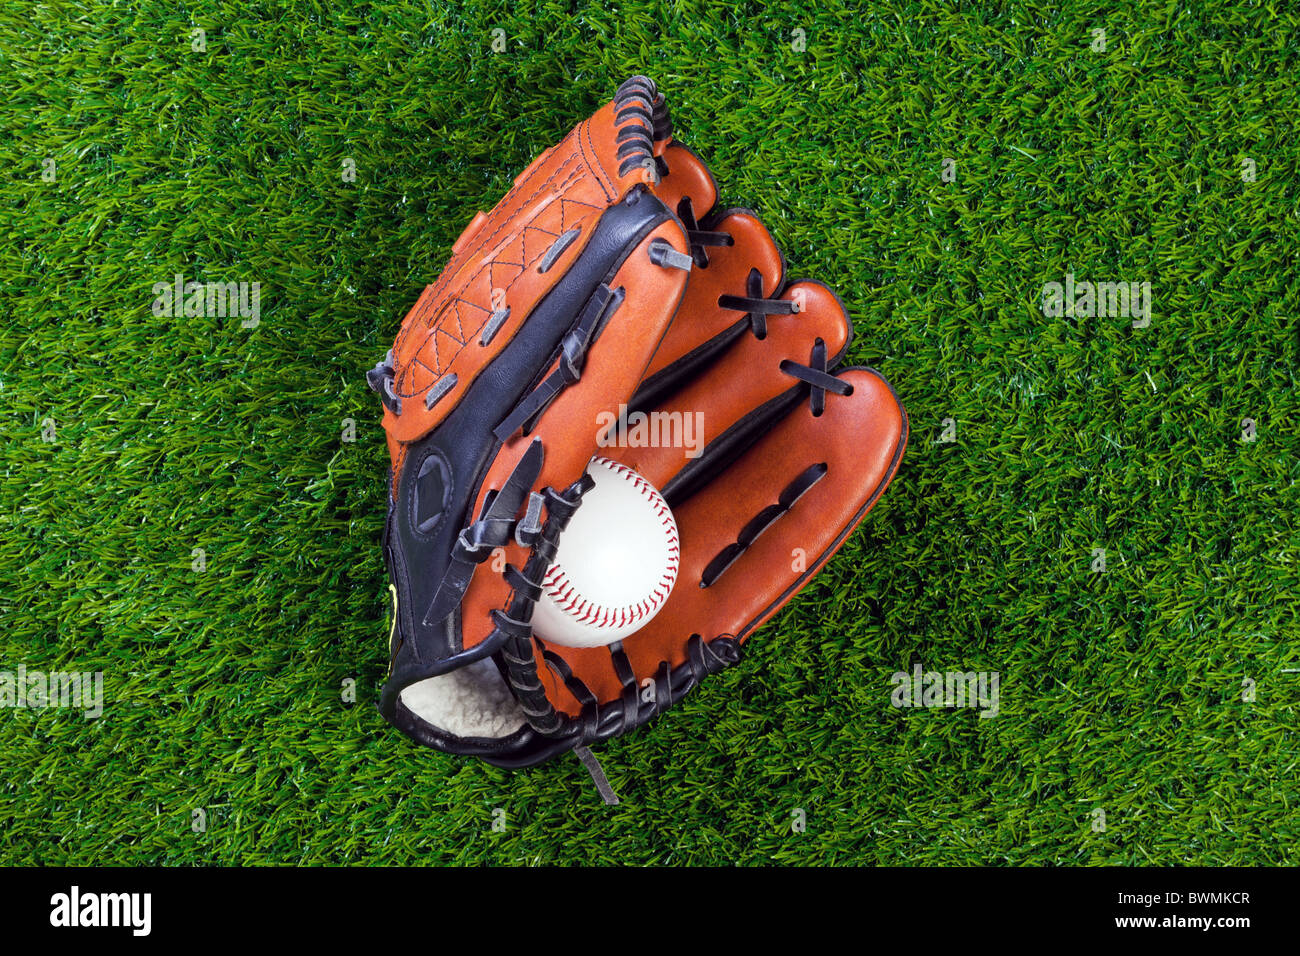 Photo d'un gant de baseball et balle sur l'herbe. Banque D'Images